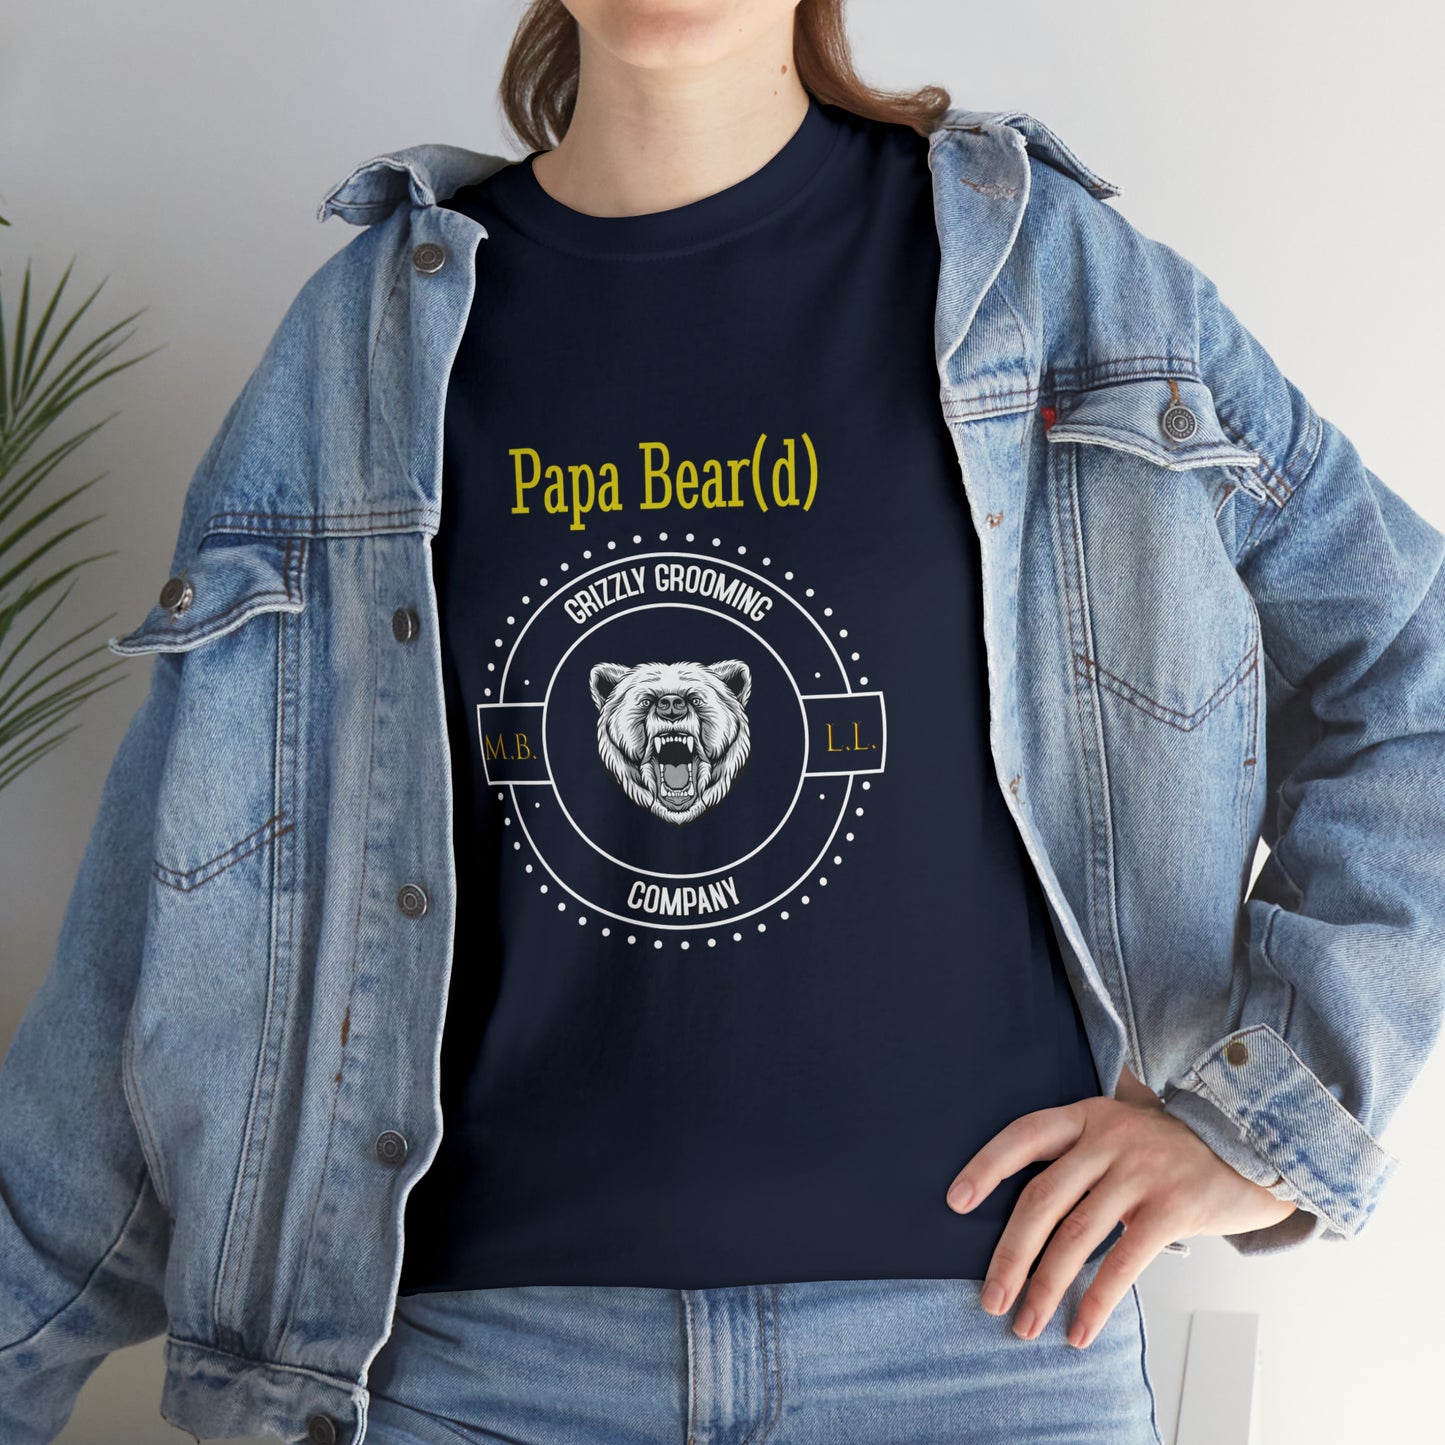 GGC "Papa Bear(d)" T-Shirt